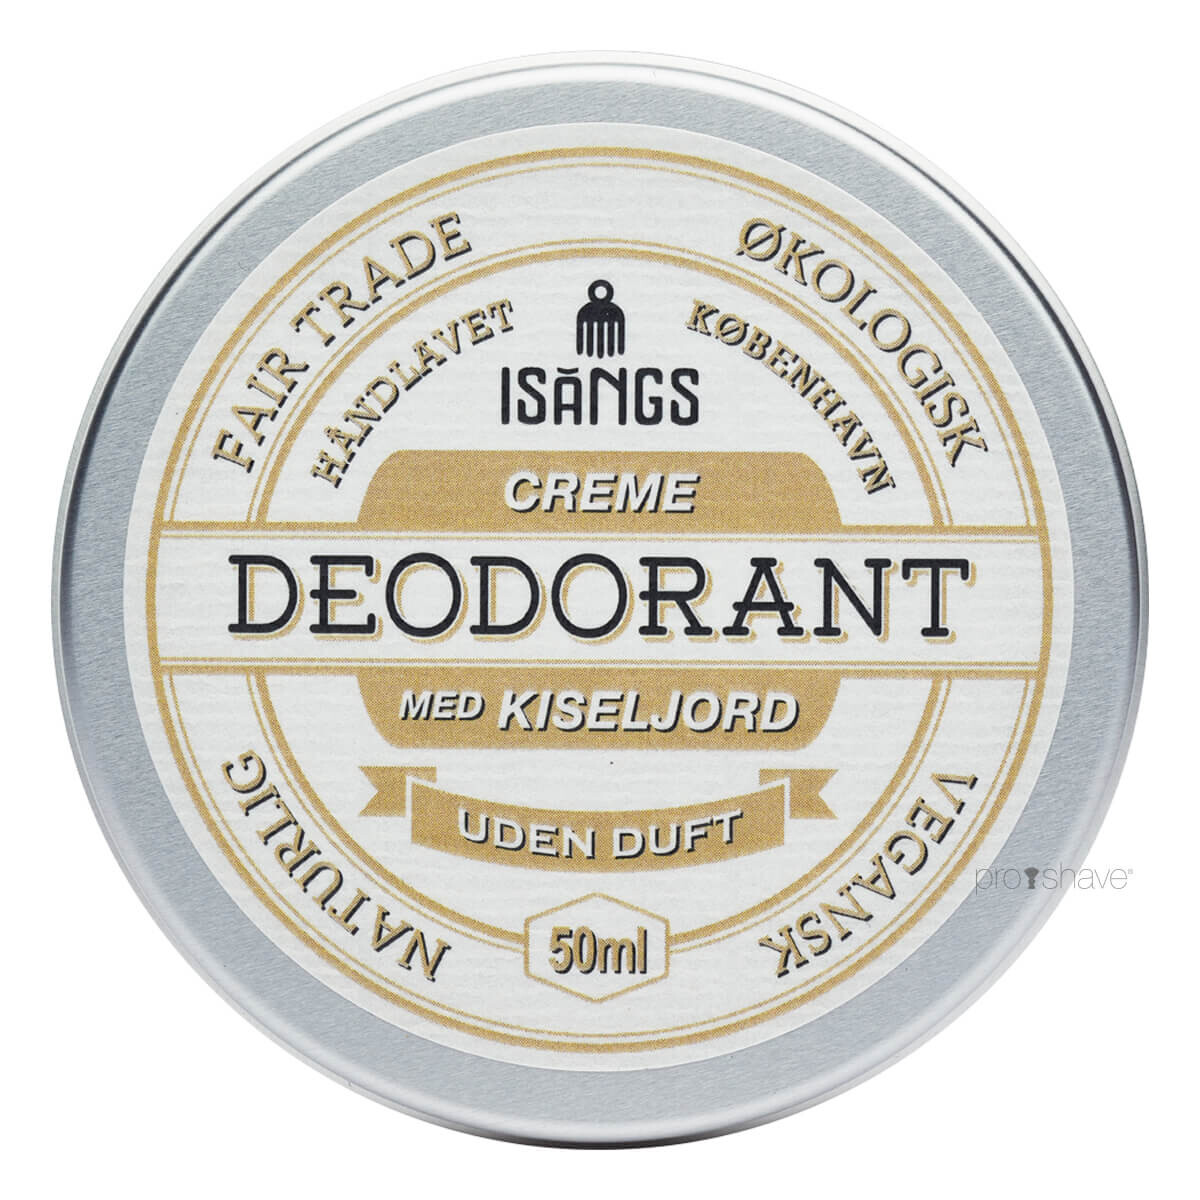 Billede af Isangs Creme Deodorant med Kiseljord, Uden duft, 50 ml.